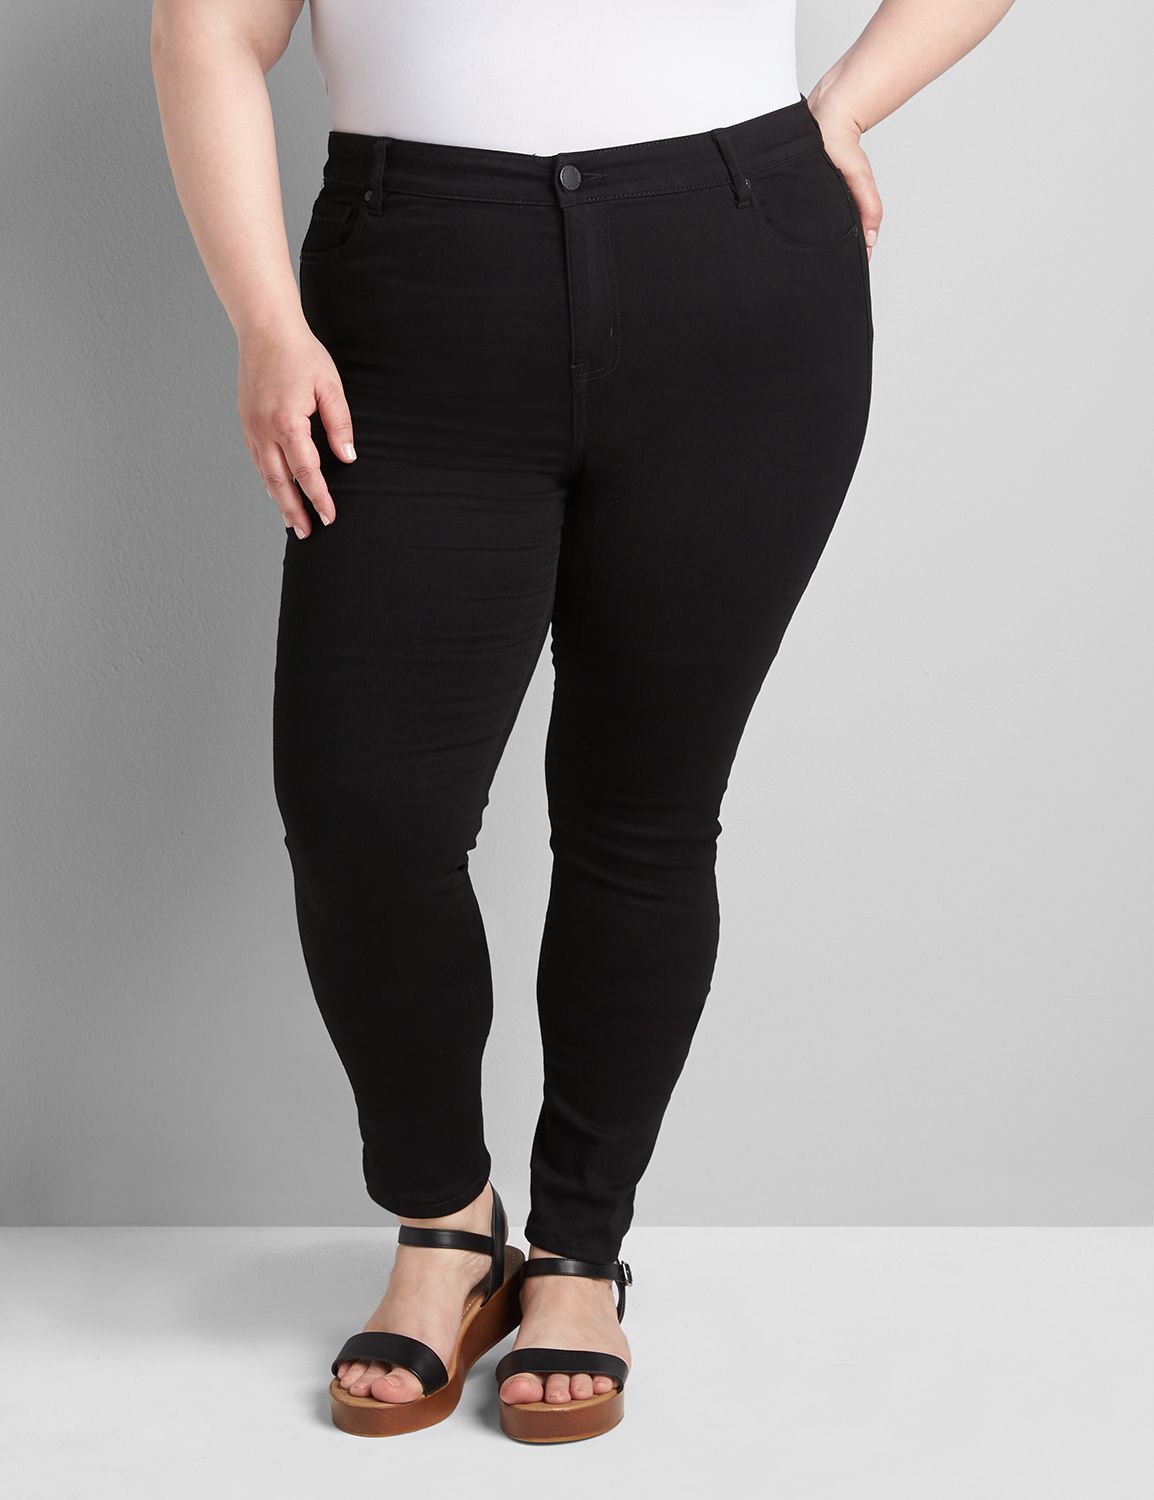 Plus Size - Jeggings Pants - Fulton Wash - Curvy Fit - 18